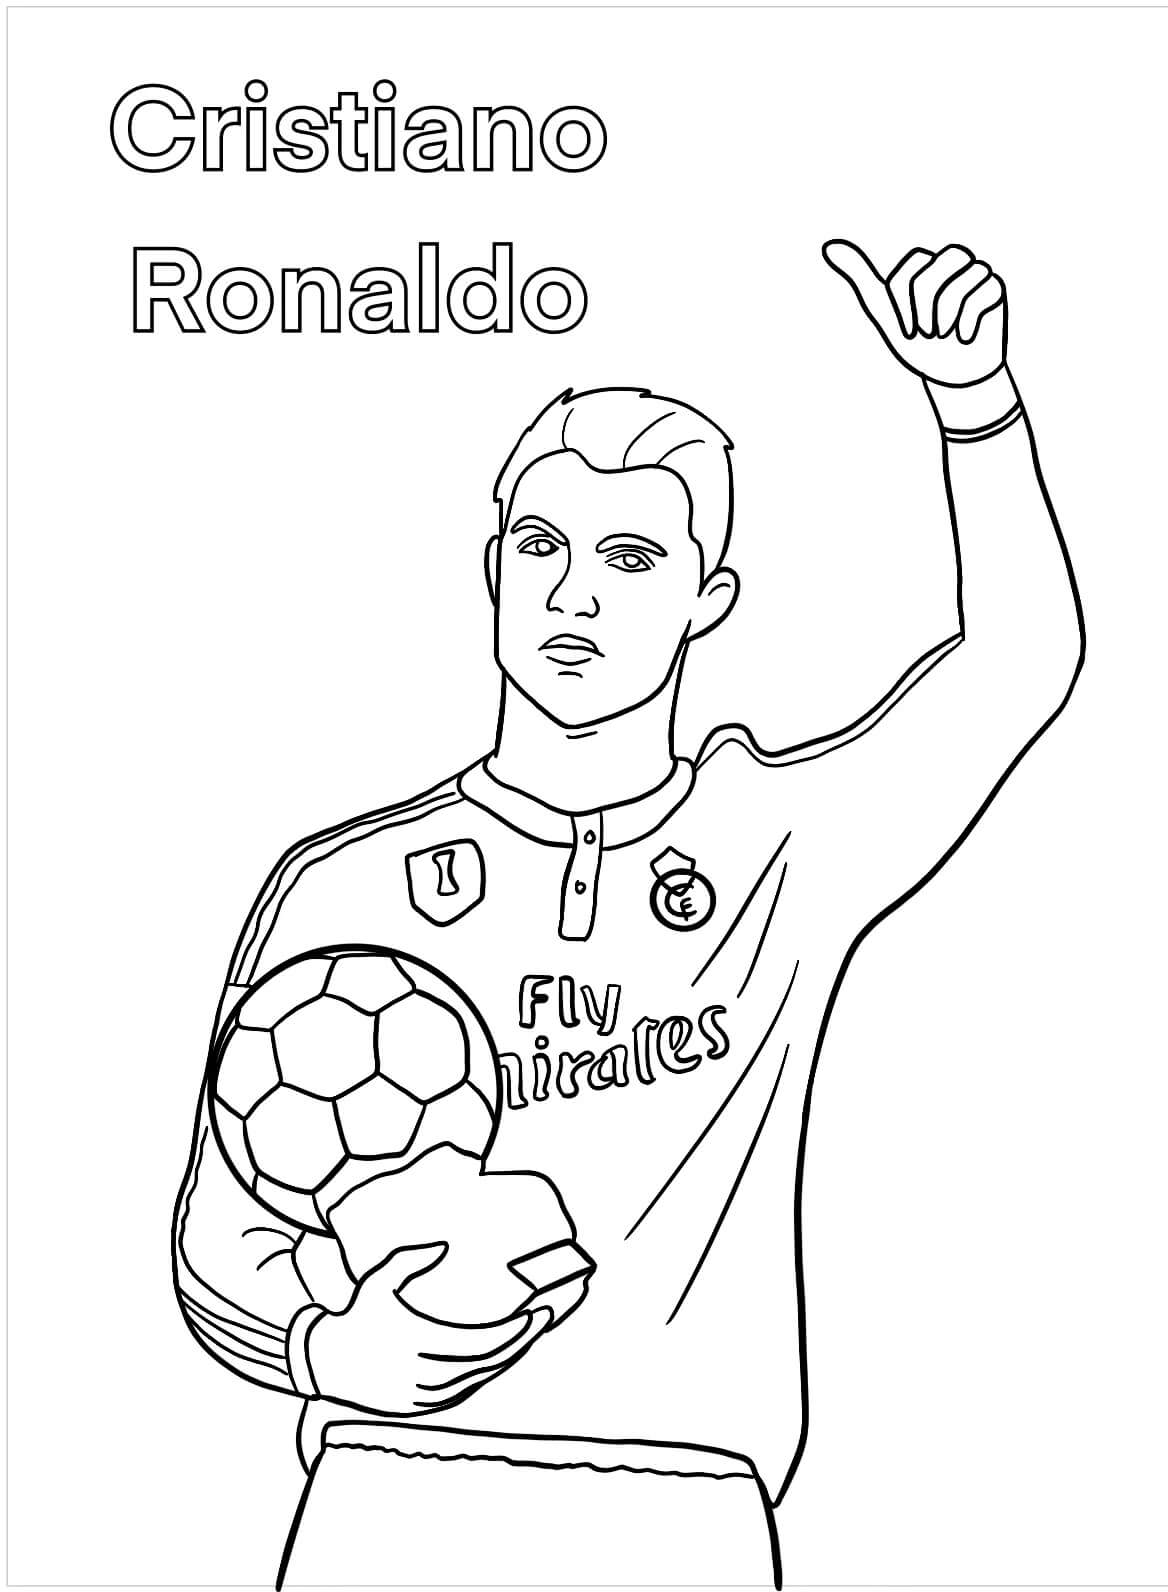 Het gezicht van Cristiano Ronaldo